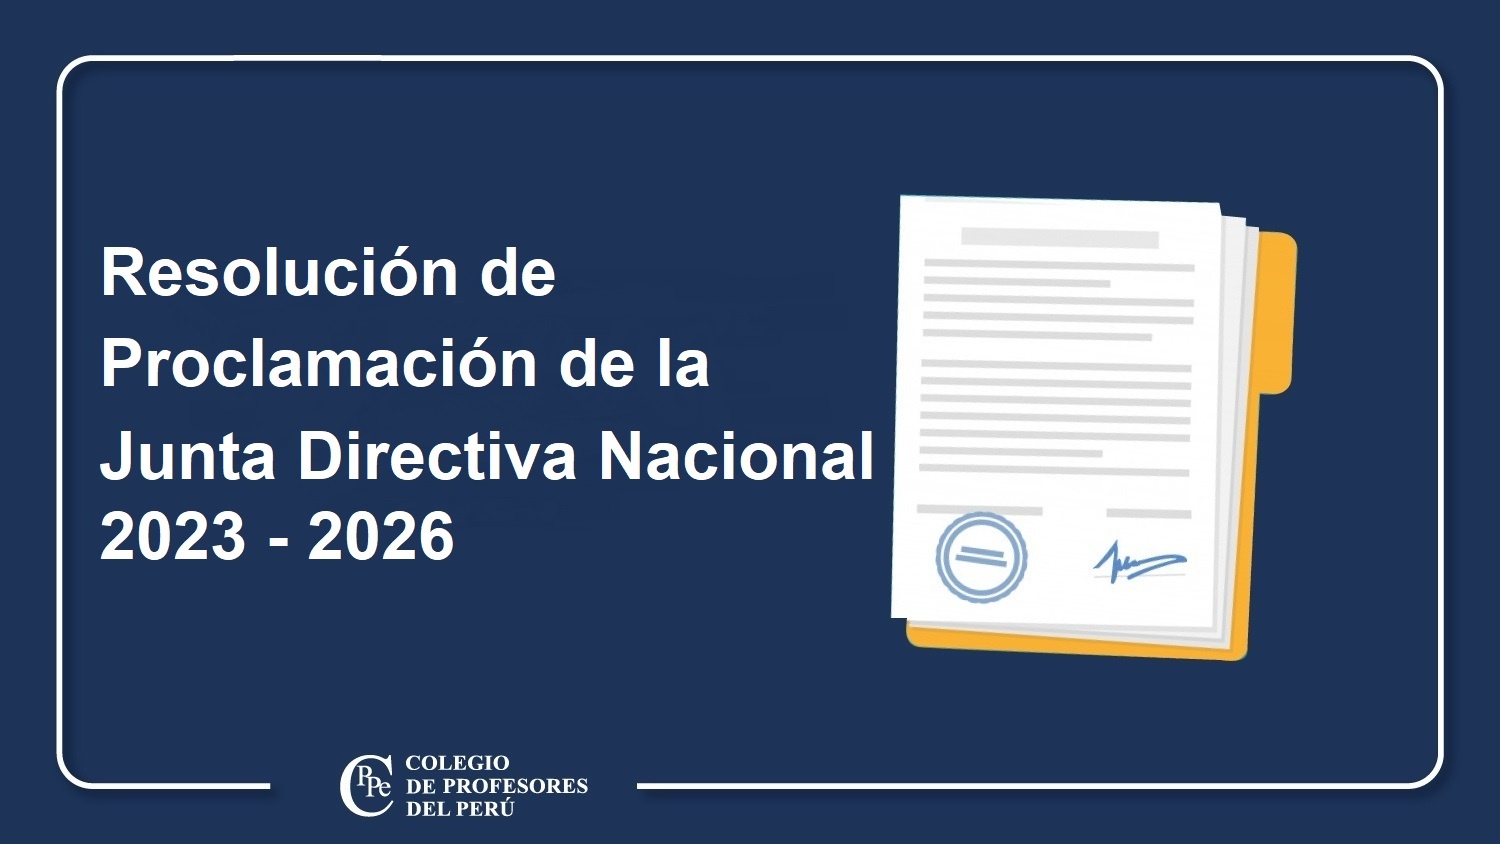 PROCLAMACIÓN DE LA JUNTA DIRECTIVA NACIONAL, PERIODO 2023 – 2026